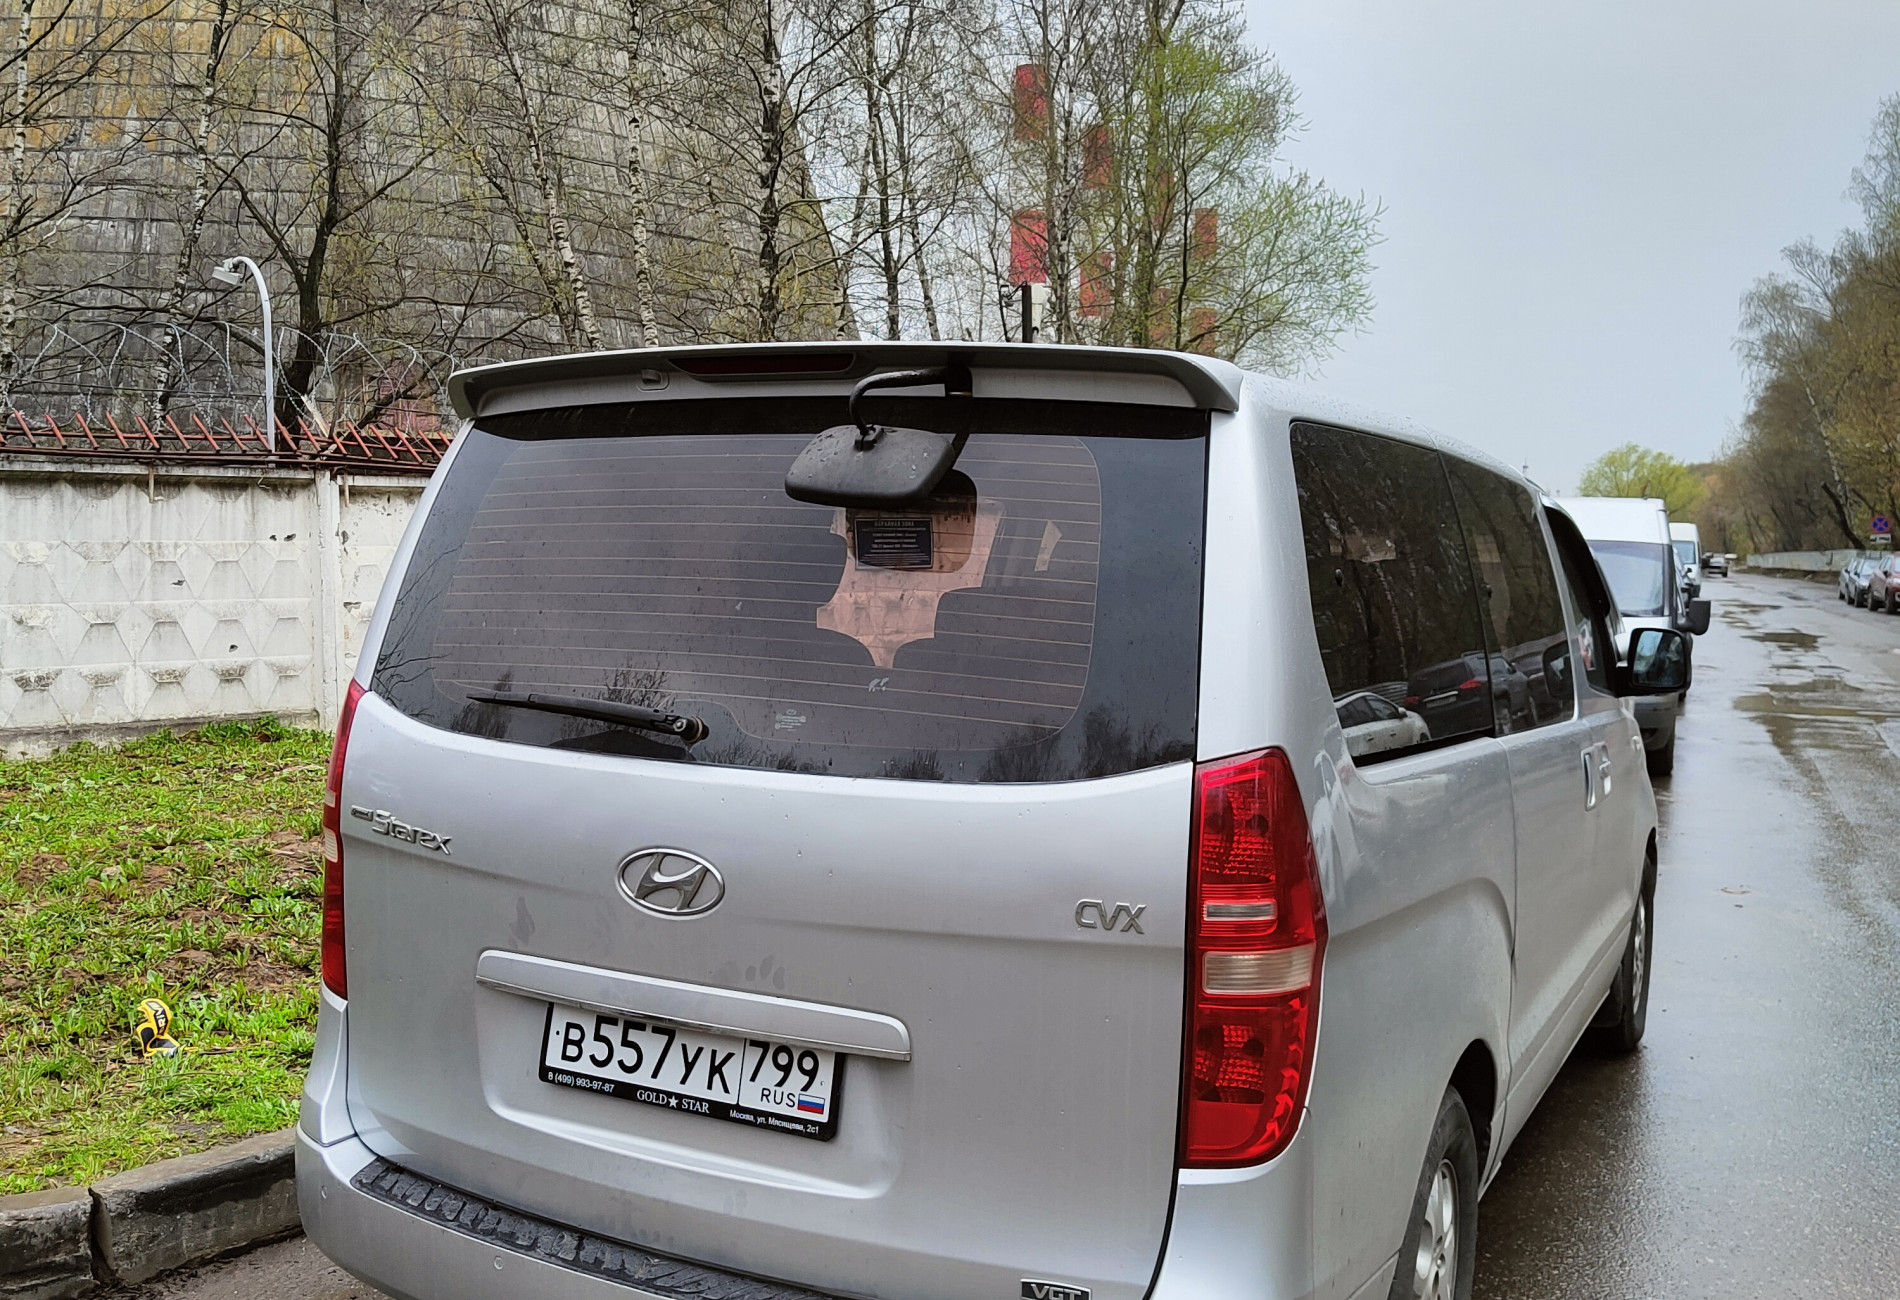 Аренда hyundai h1 2010 года в городе Москва Коптево от 4400 руб./сутки, задний привод, двигатель: дизель, объем 2.5 литров, ОСАГО (Впишу в полис), без водителя, недорого, вид 2 - RentRide